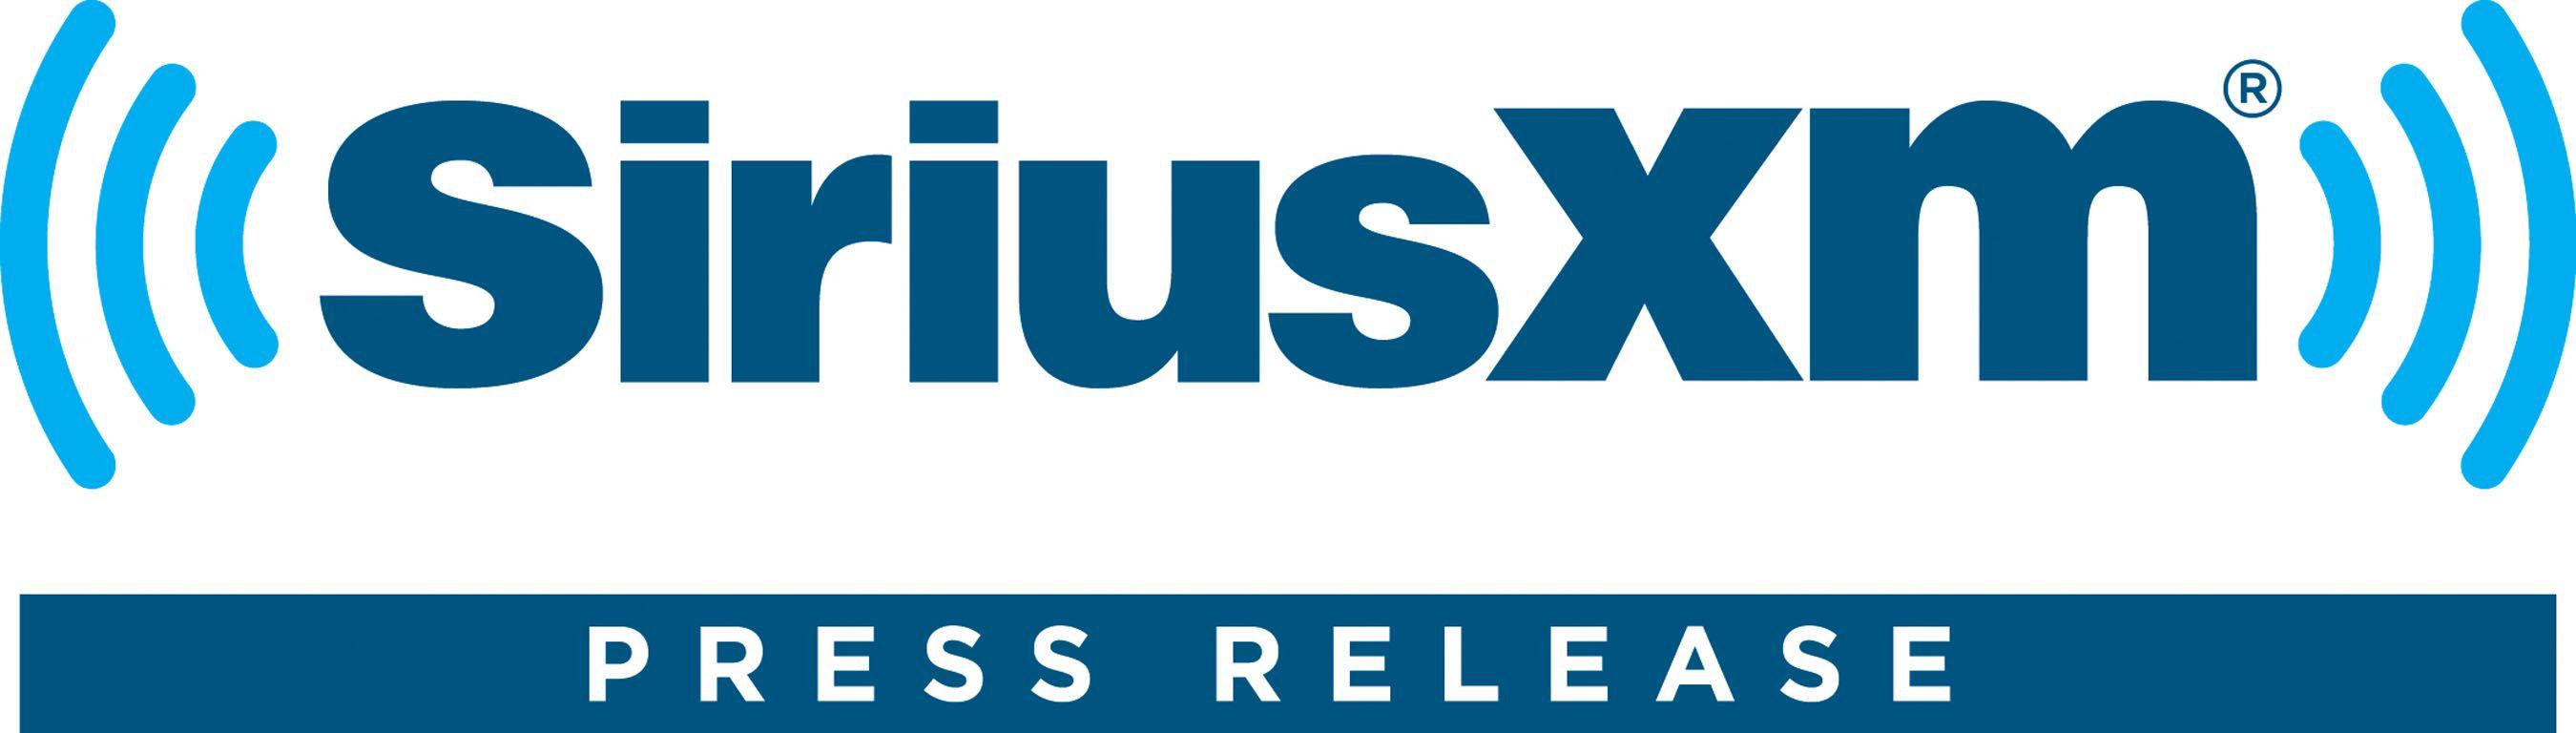 SiriusXM Radio Logo - SIRIUS XM RADIO LOGO